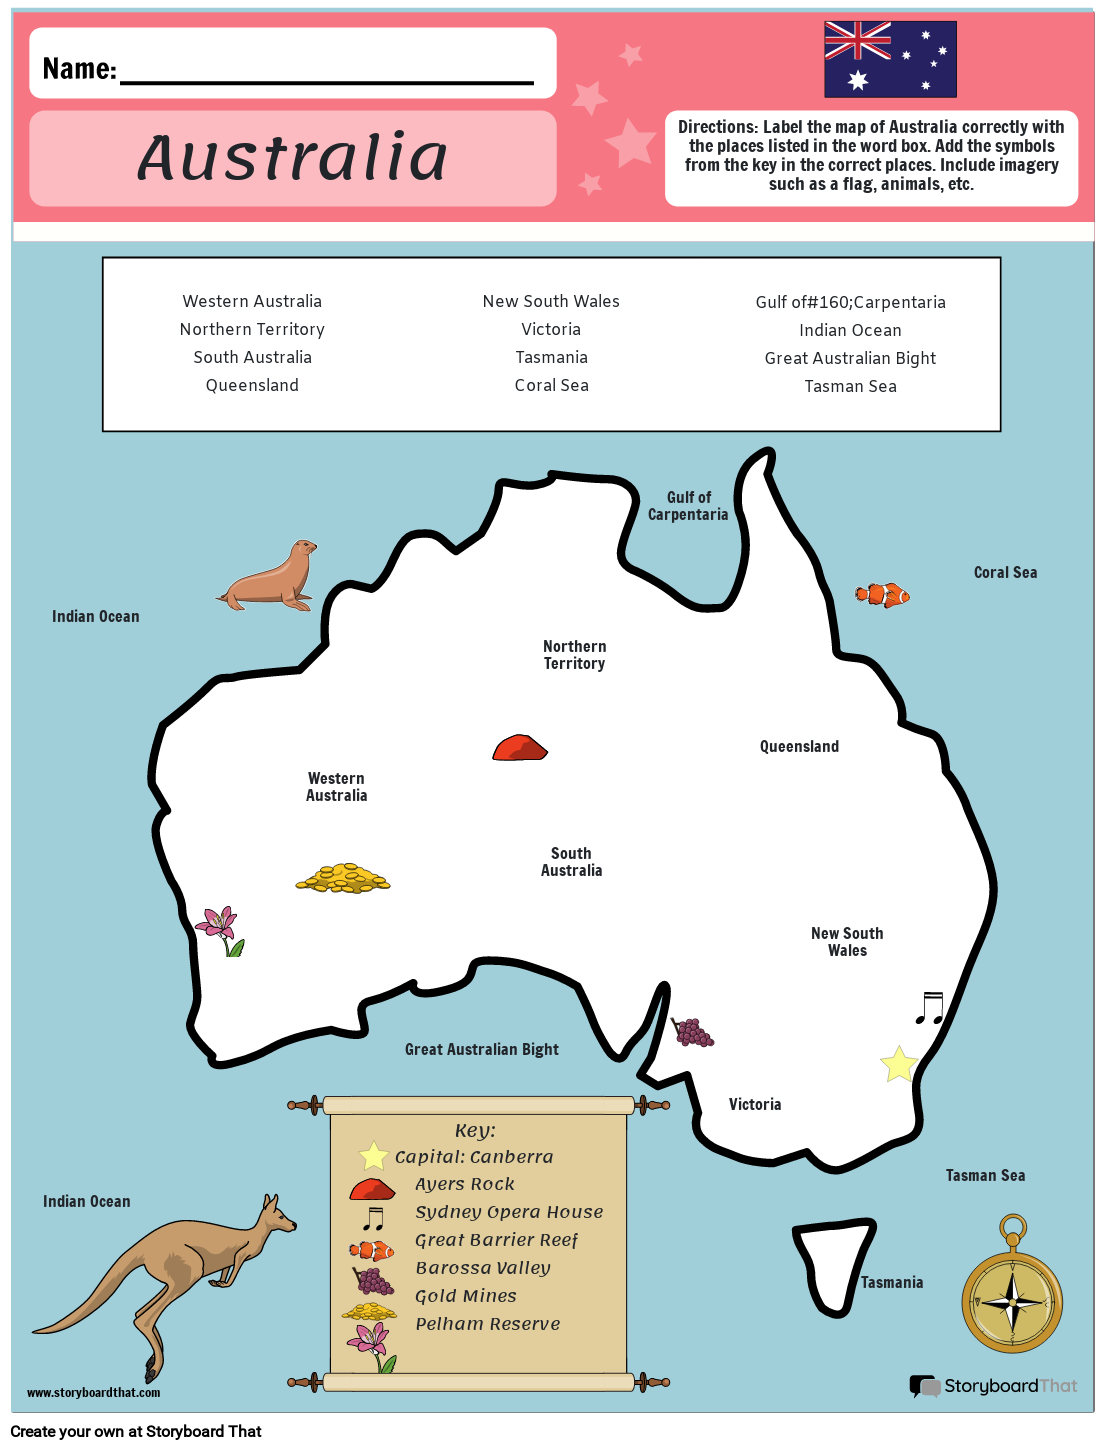 דוגמה לגליון עבודה של מפה אוסטרליה